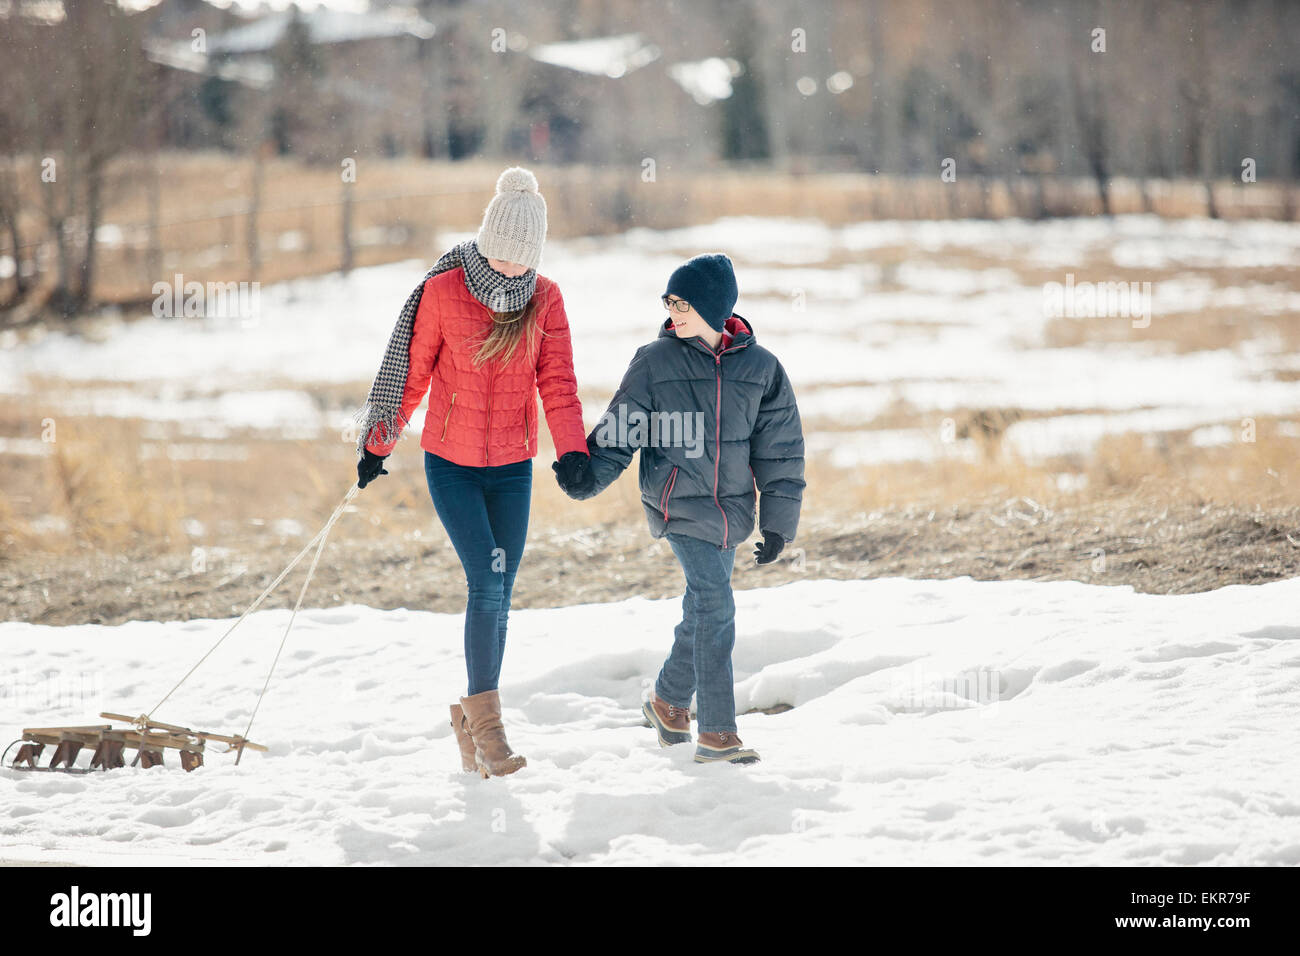 Un fratello e una sorella nella neve, uno tirando una slitta. Foto Stock